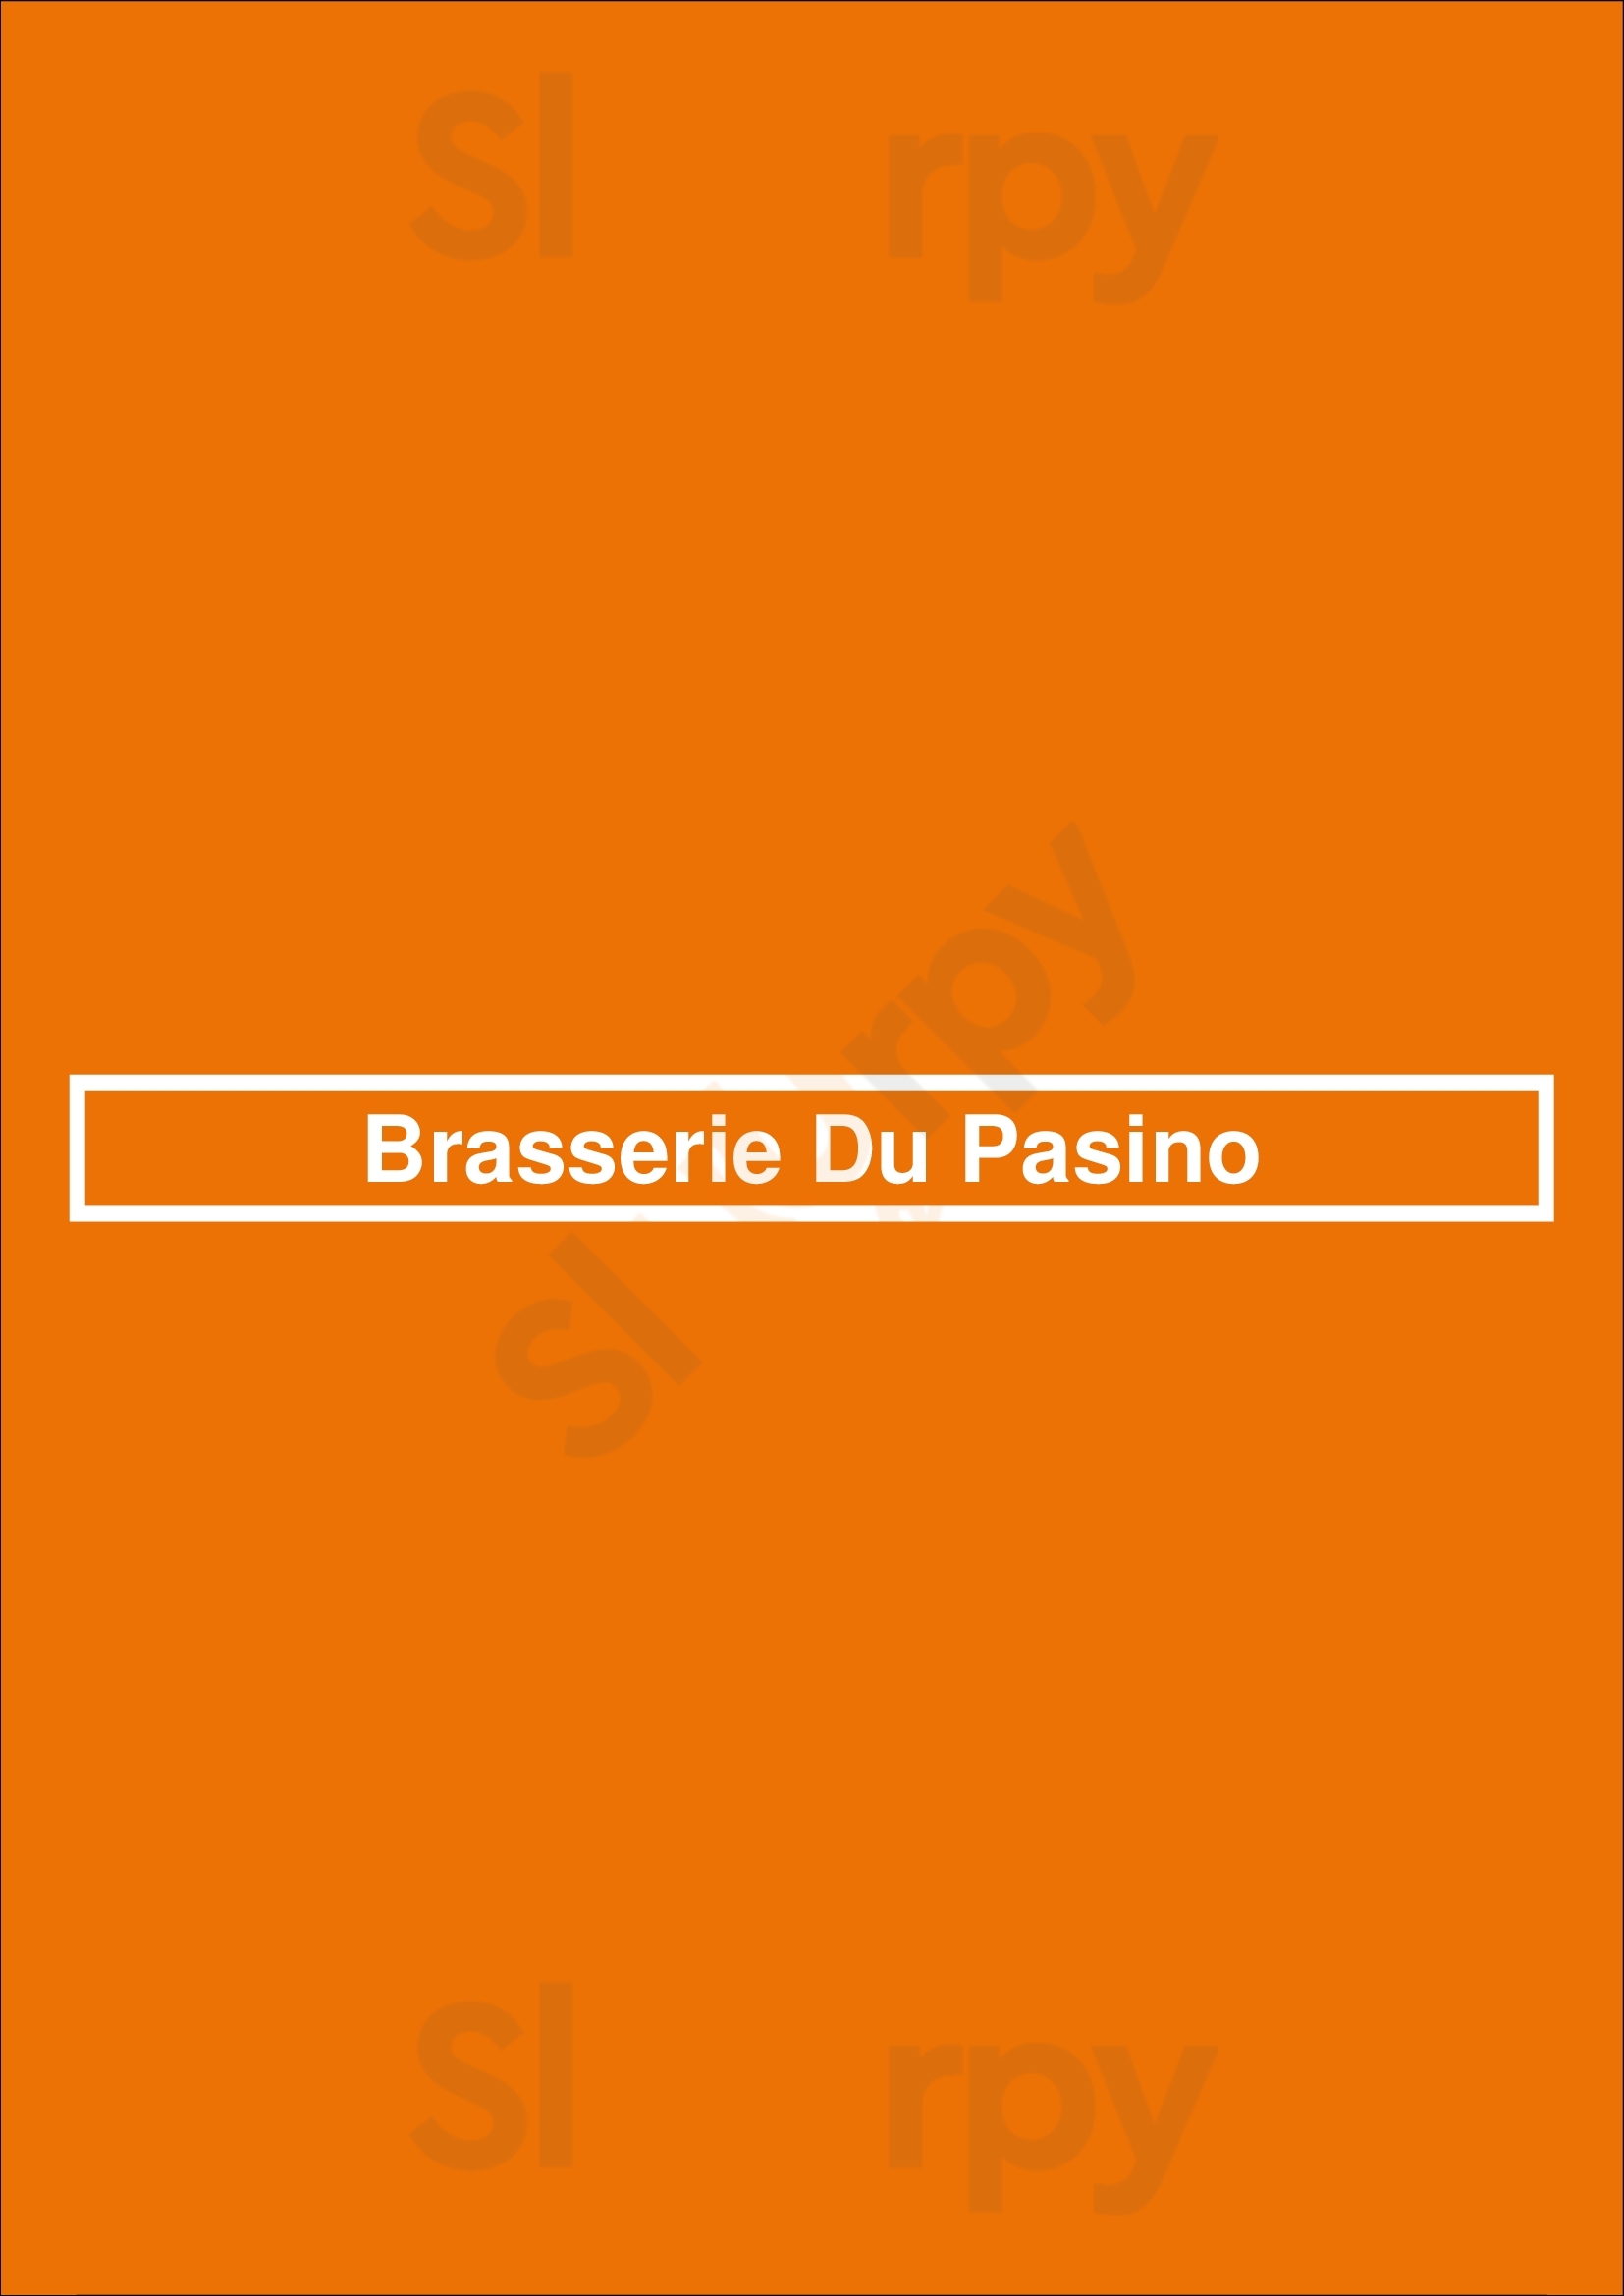 Brasserie Du Pasino Le Havre Menu - 1